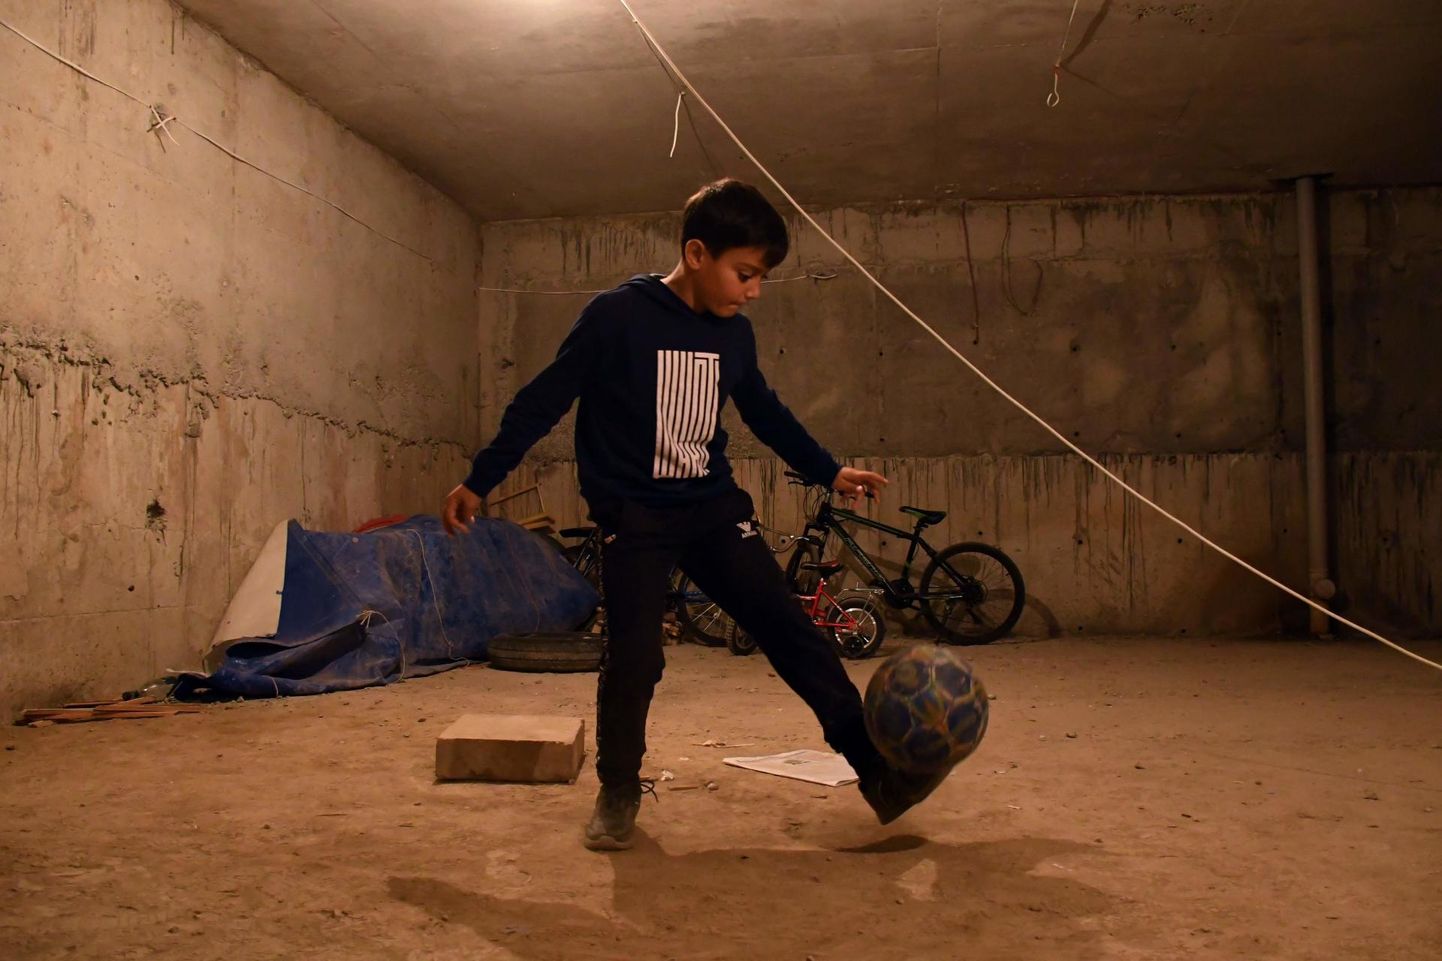 Armeenlasest poiss harjutamas Stephanakerdi kortermaja keldrisse rajatud varjendis jalgpalliga žonglöörimist.